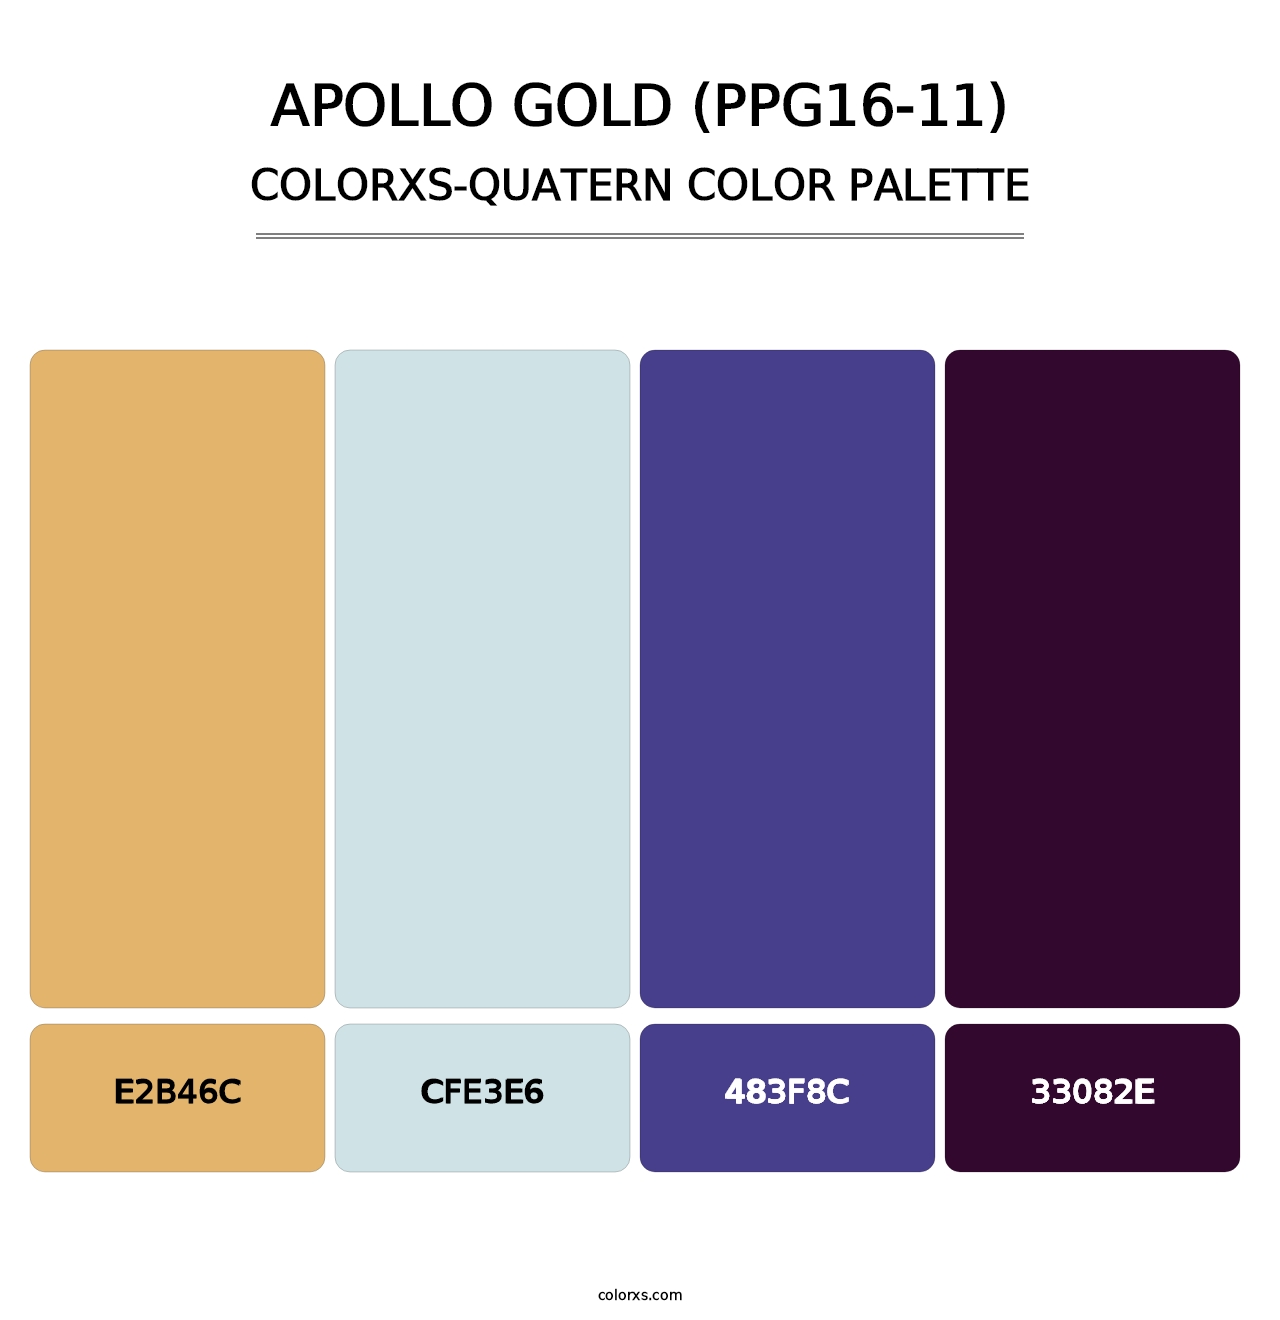 Apollo Gold (PPG16-11) - Colorxs Quatern Palette